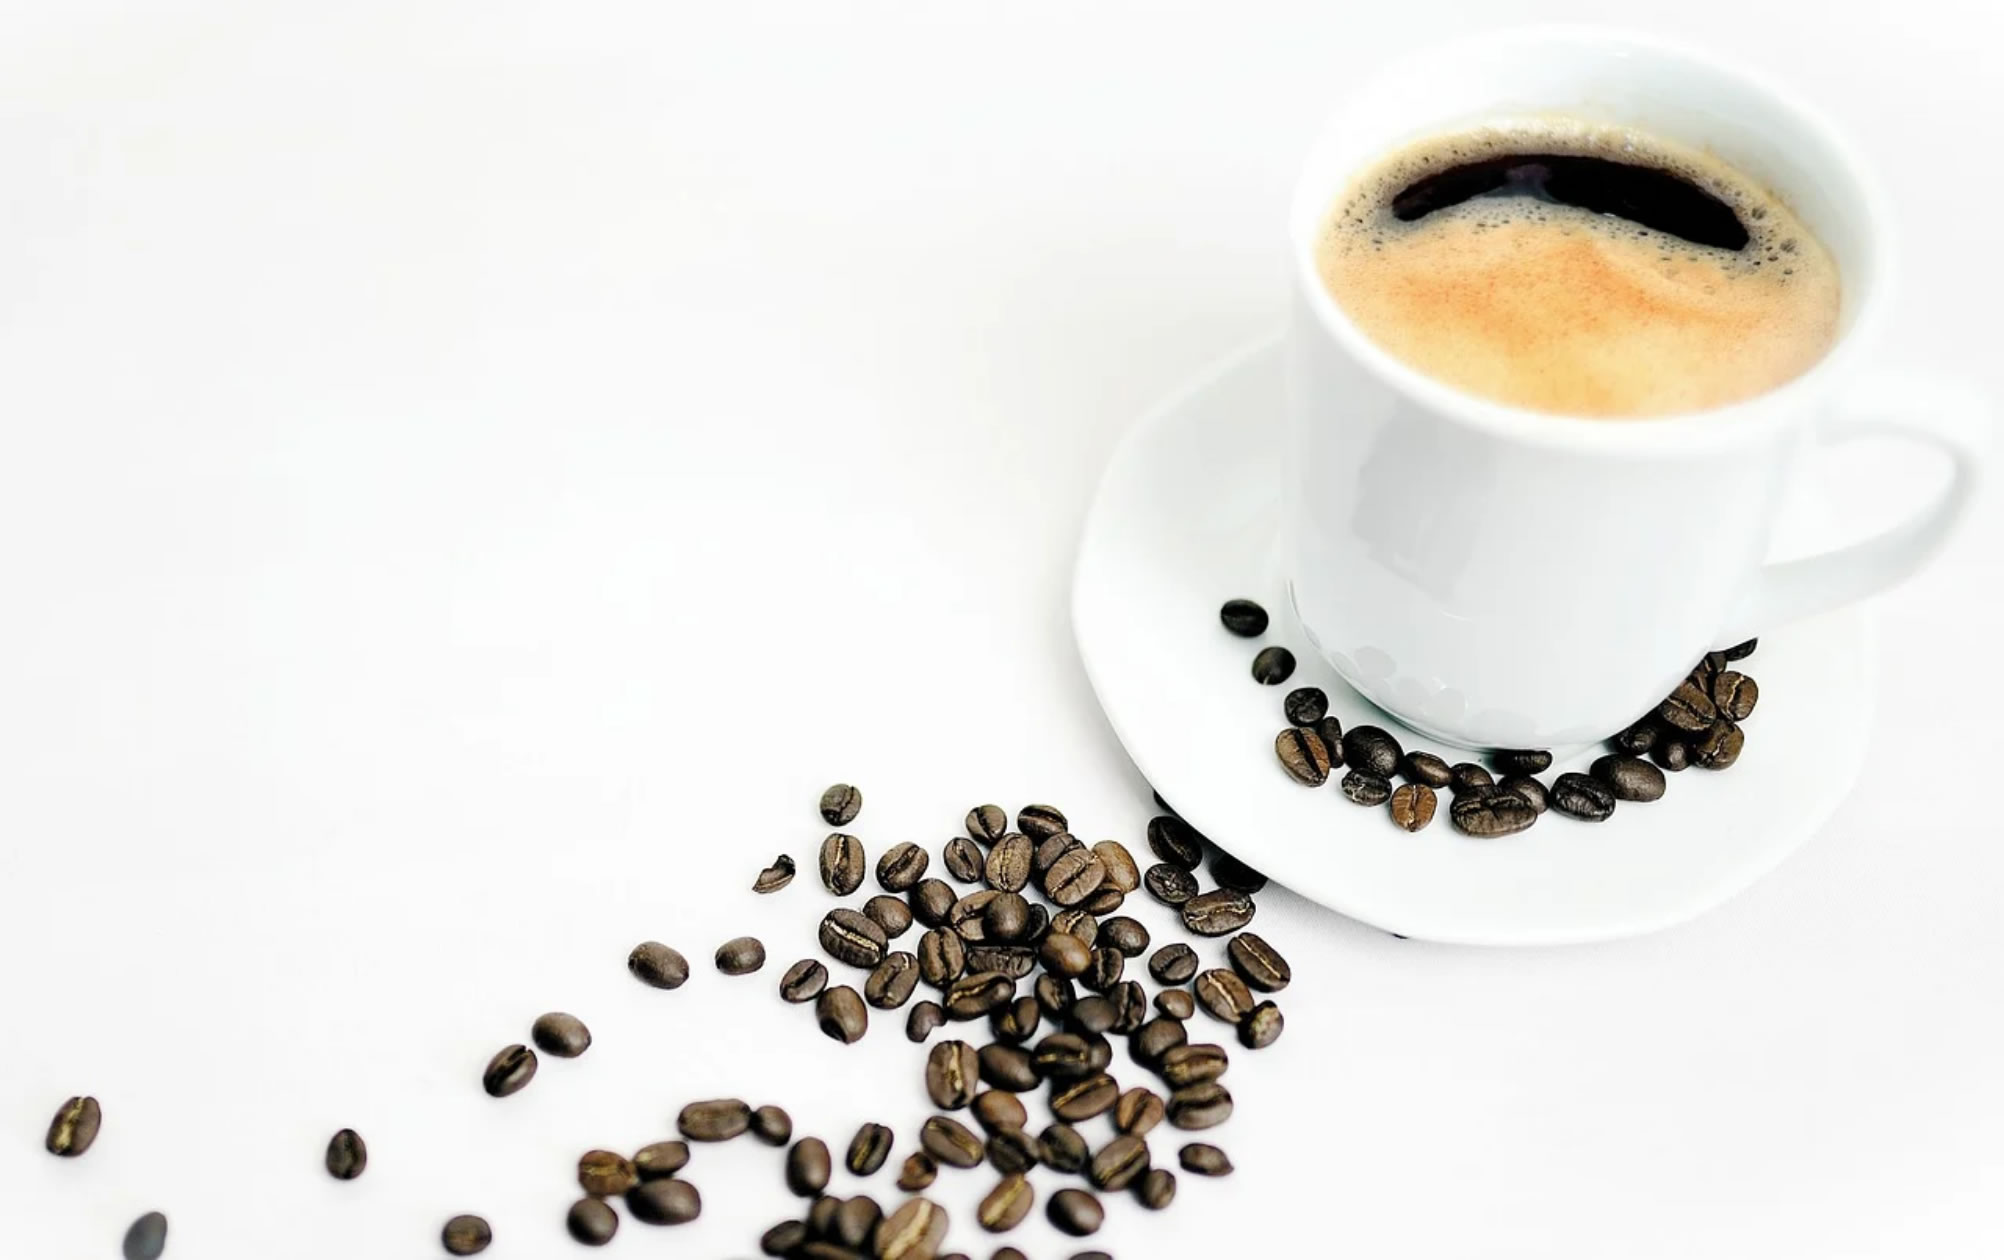 调查发现没有证据表明适量饮用咖啡会导致心律失常 可能还具有消炎益处